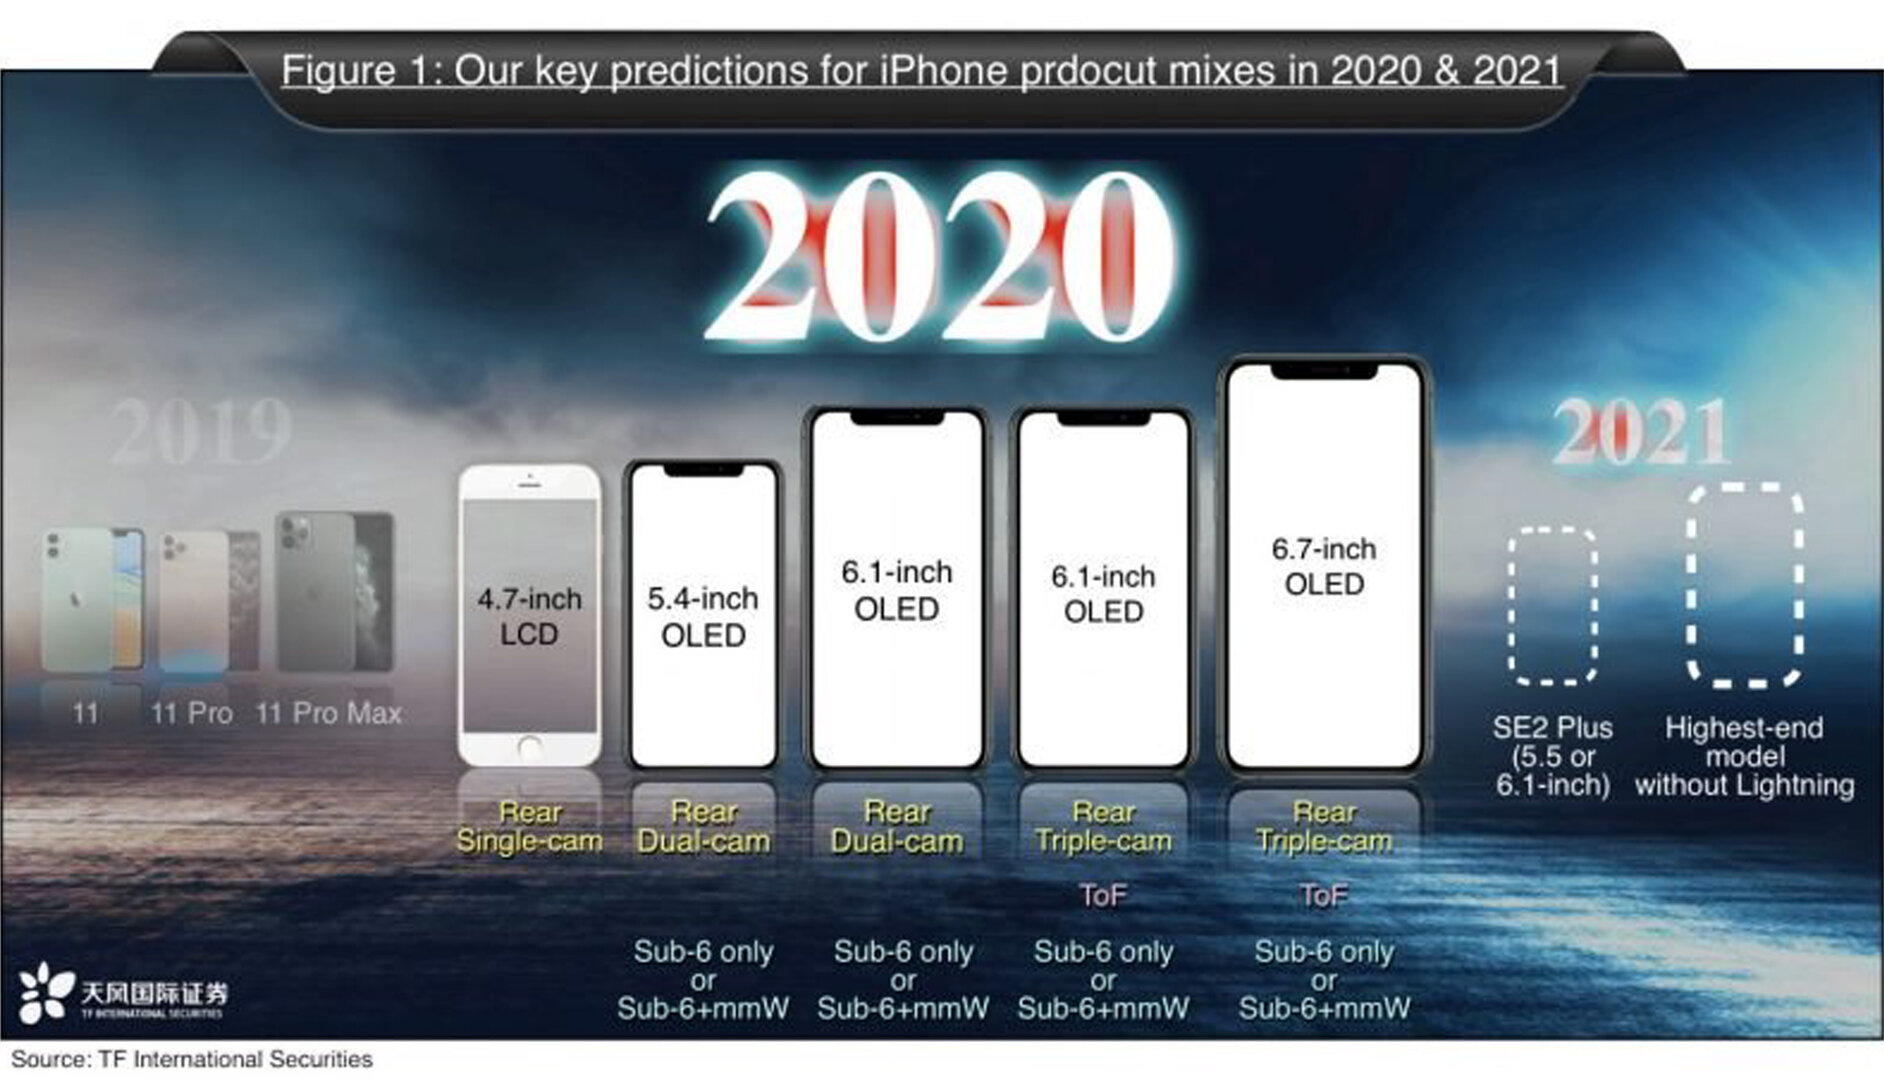 Dòng sản phẩm iPhone bị nghi ngờ bởi Ming-Chi Kuo cho năm 2021